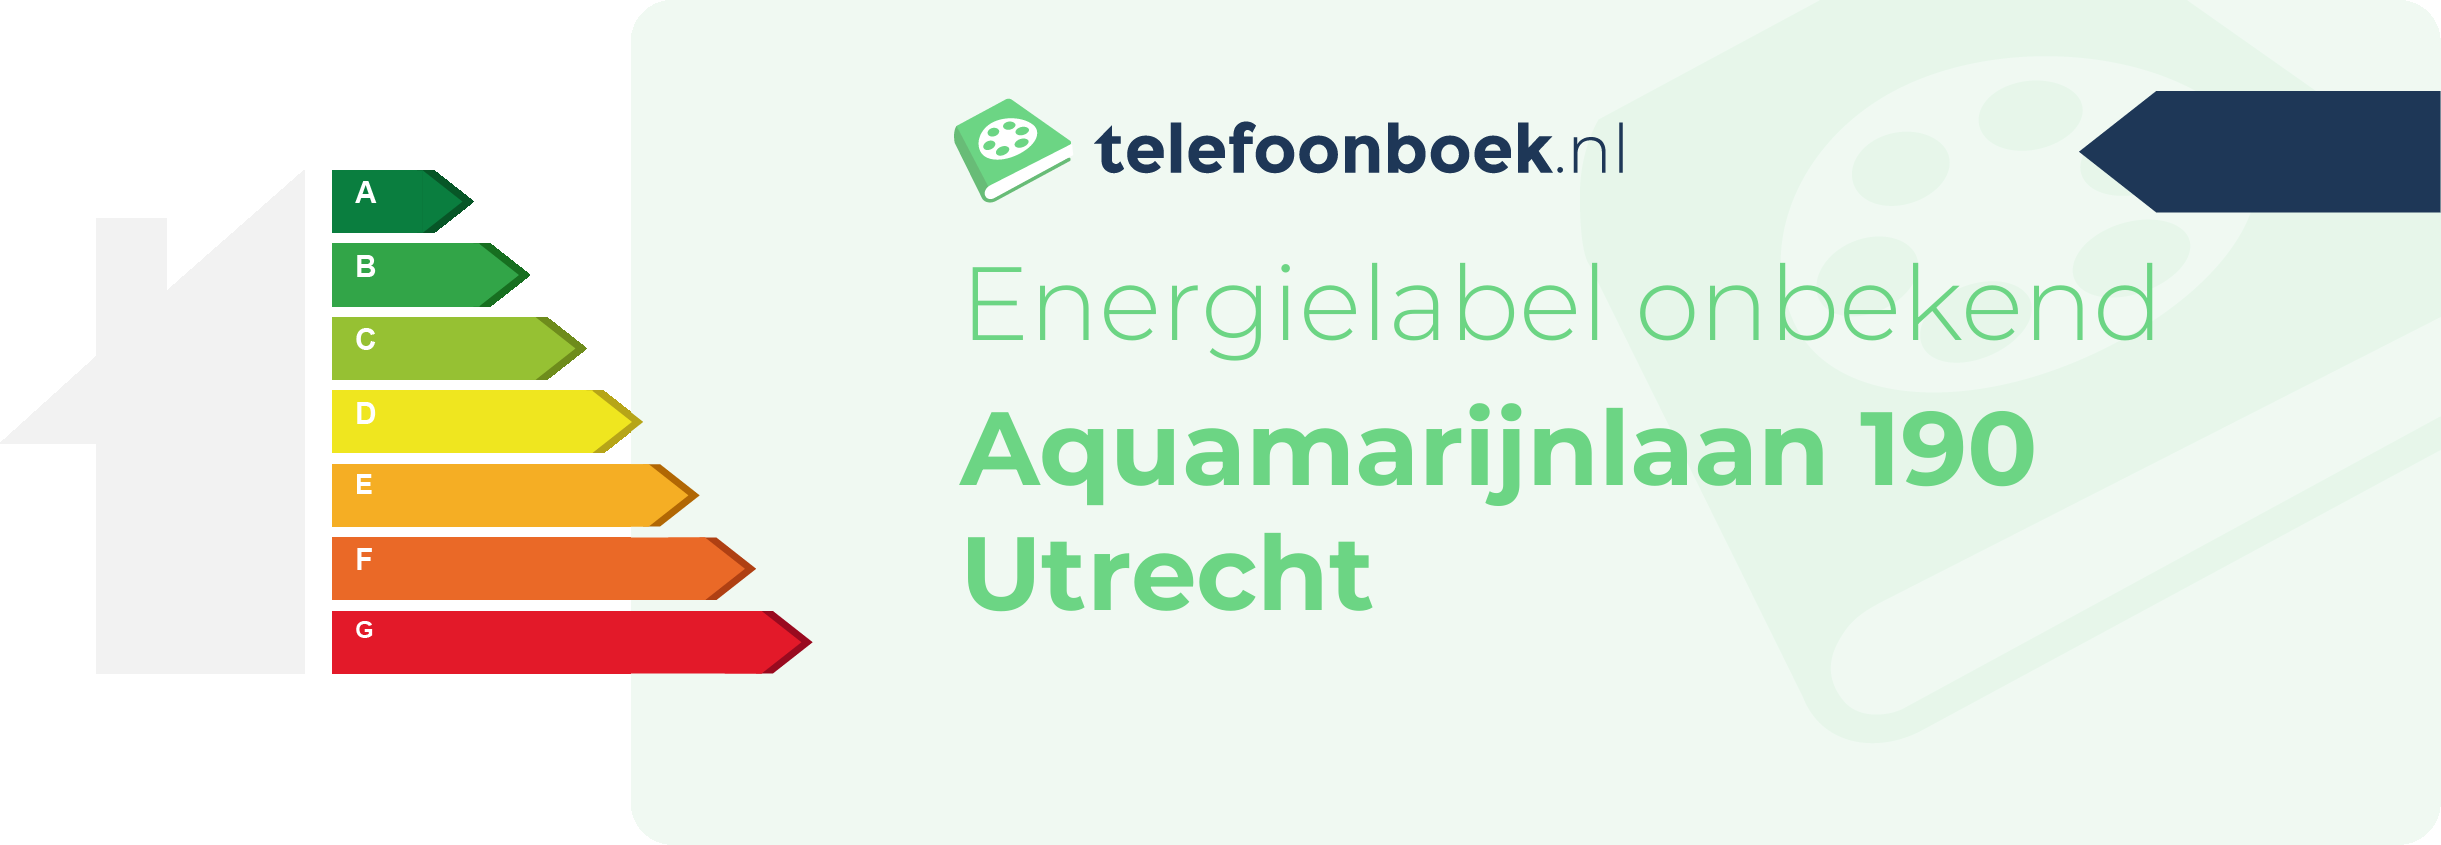 Energielabel Aquamarijnlaan 190 Utrecht